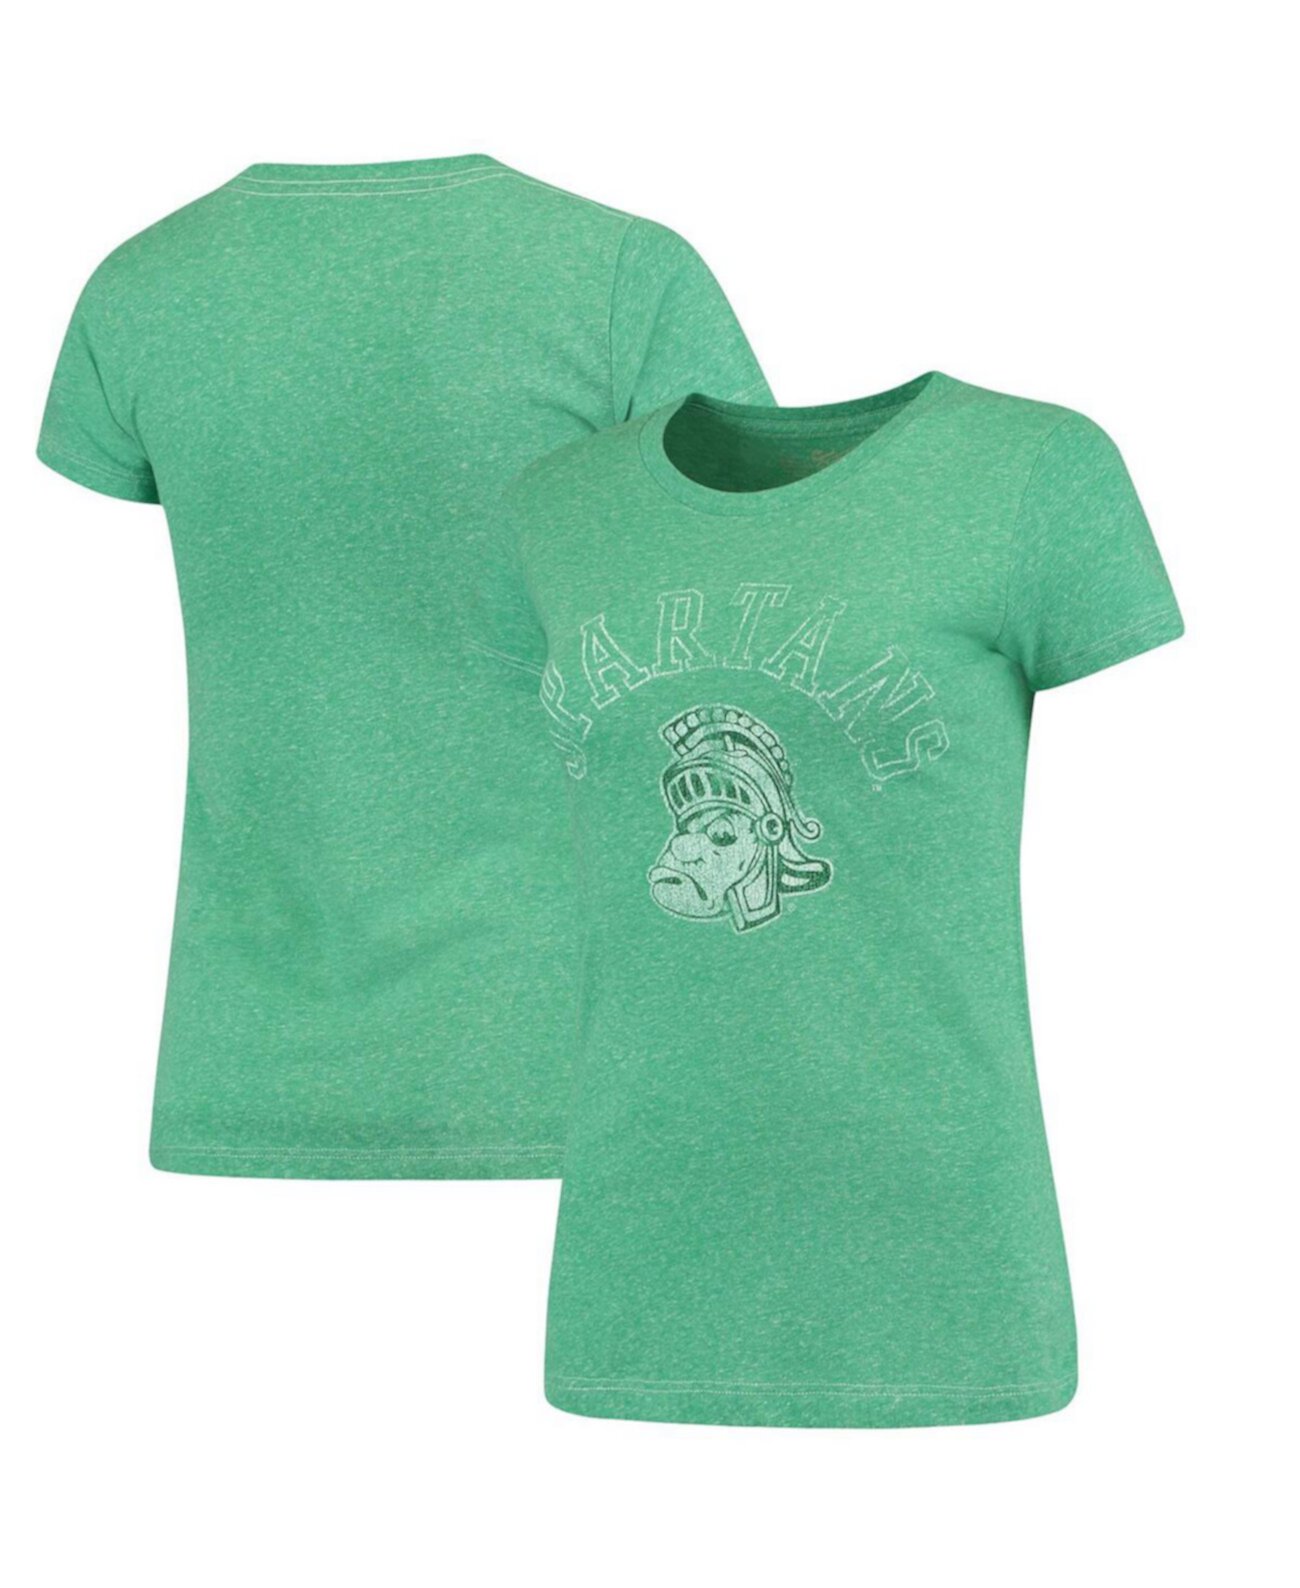 Женская футболка с круглым вырезом цвета яблока зеленого цвета Michigan State Spartans Tri-Blend Original Retro Brand